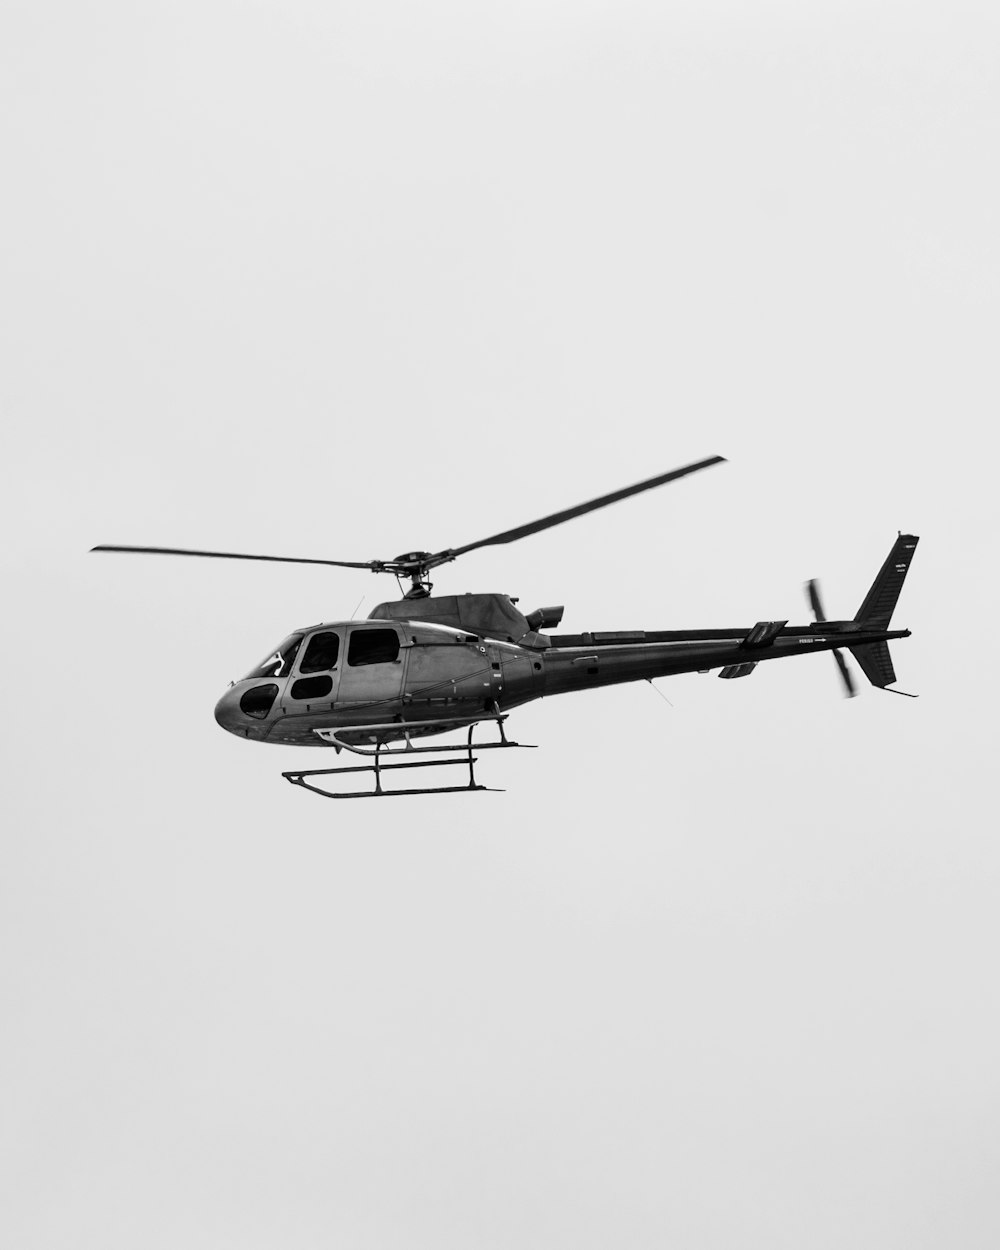 Grau-schwarzer Hubschrauber in der Luft